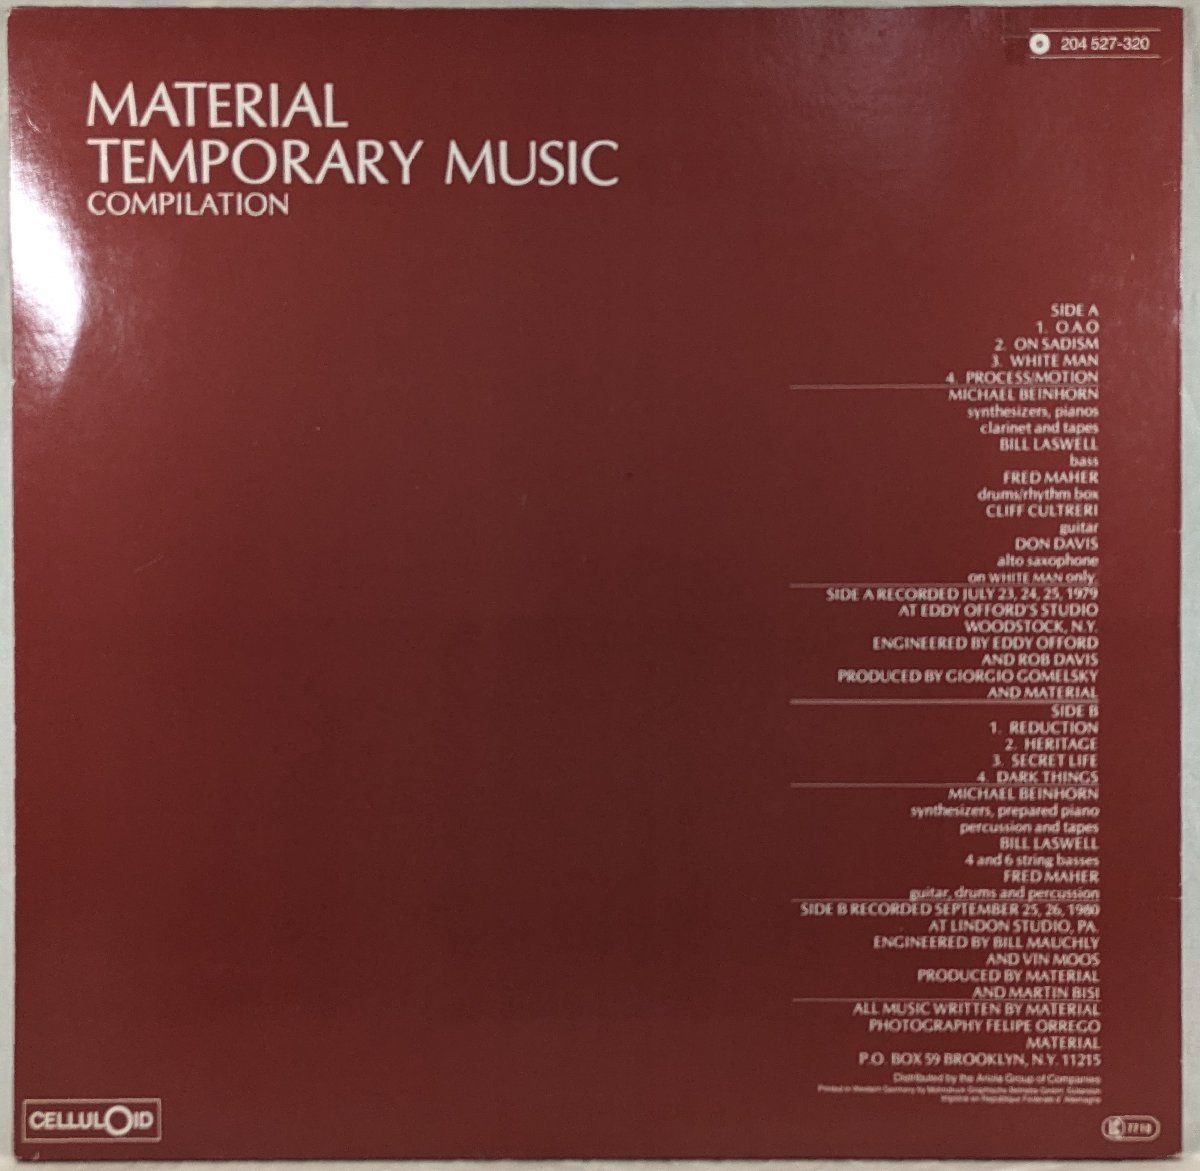 ドイツ盤★中古LP「MATERIAL / マテリアル」TEMPORARY MUSIC compilation / テンポラリー・ミュージック・コンピレーション_画像2